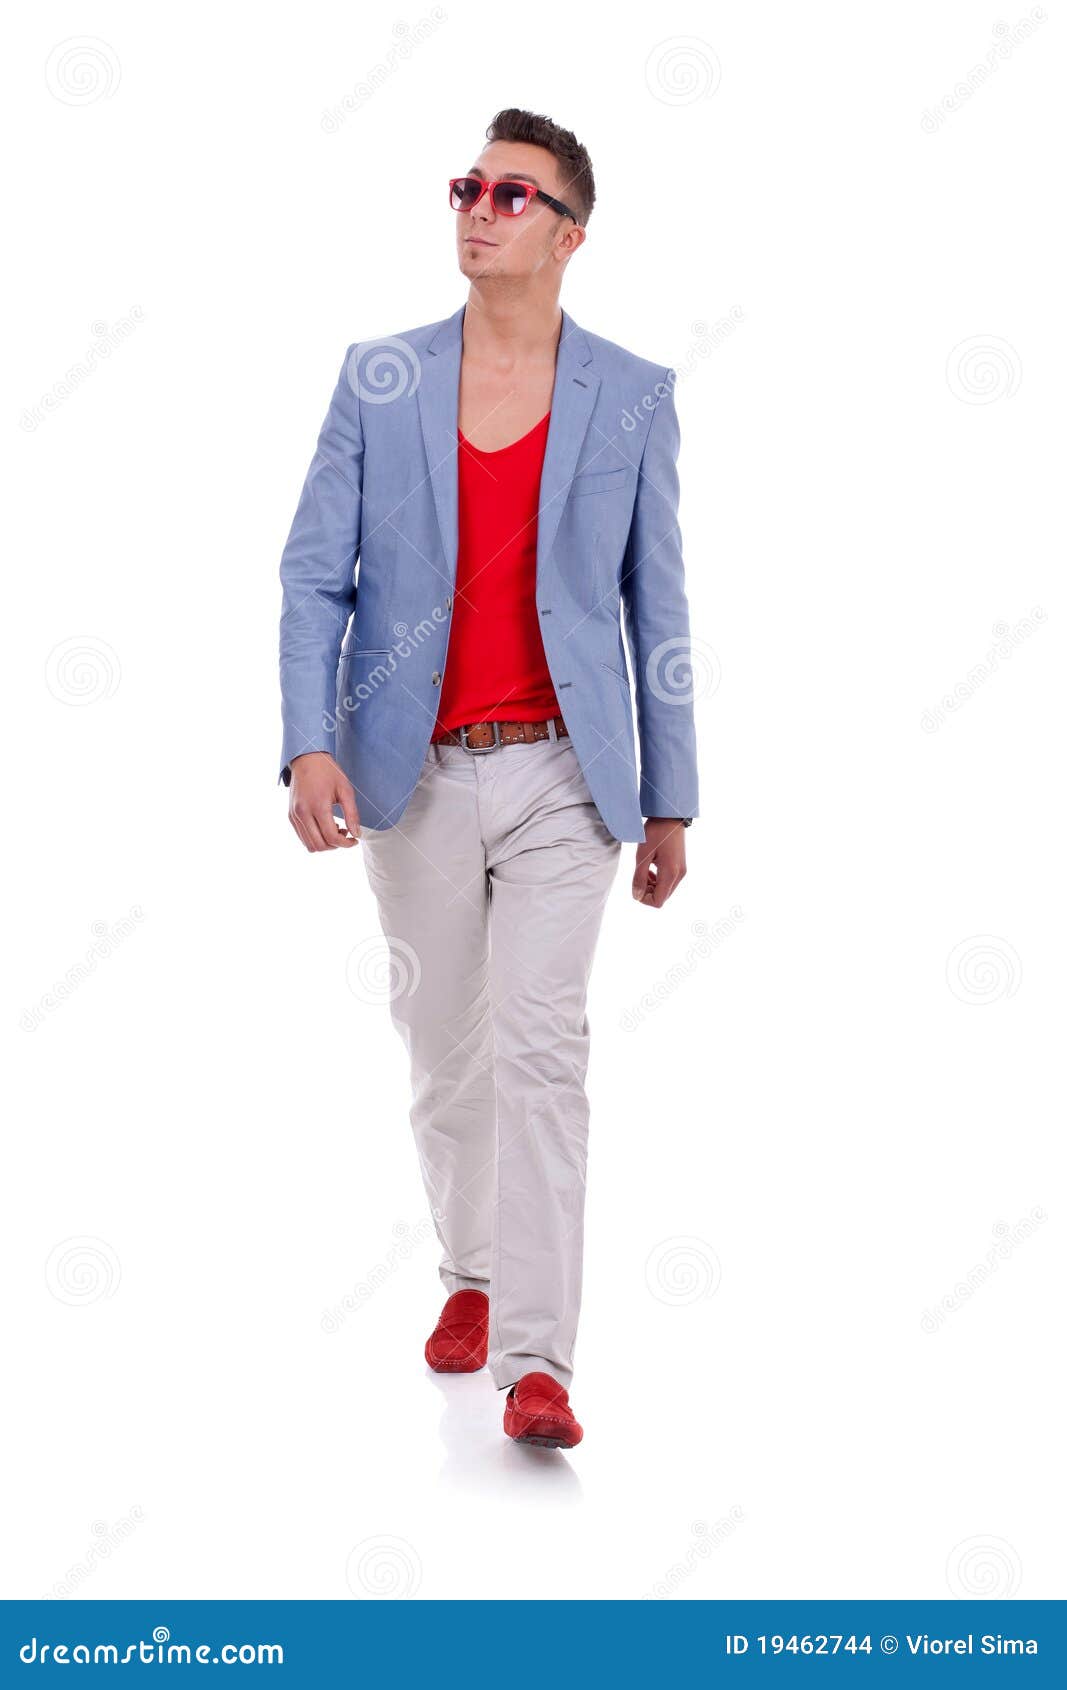 Stylish young man walking stock photo 